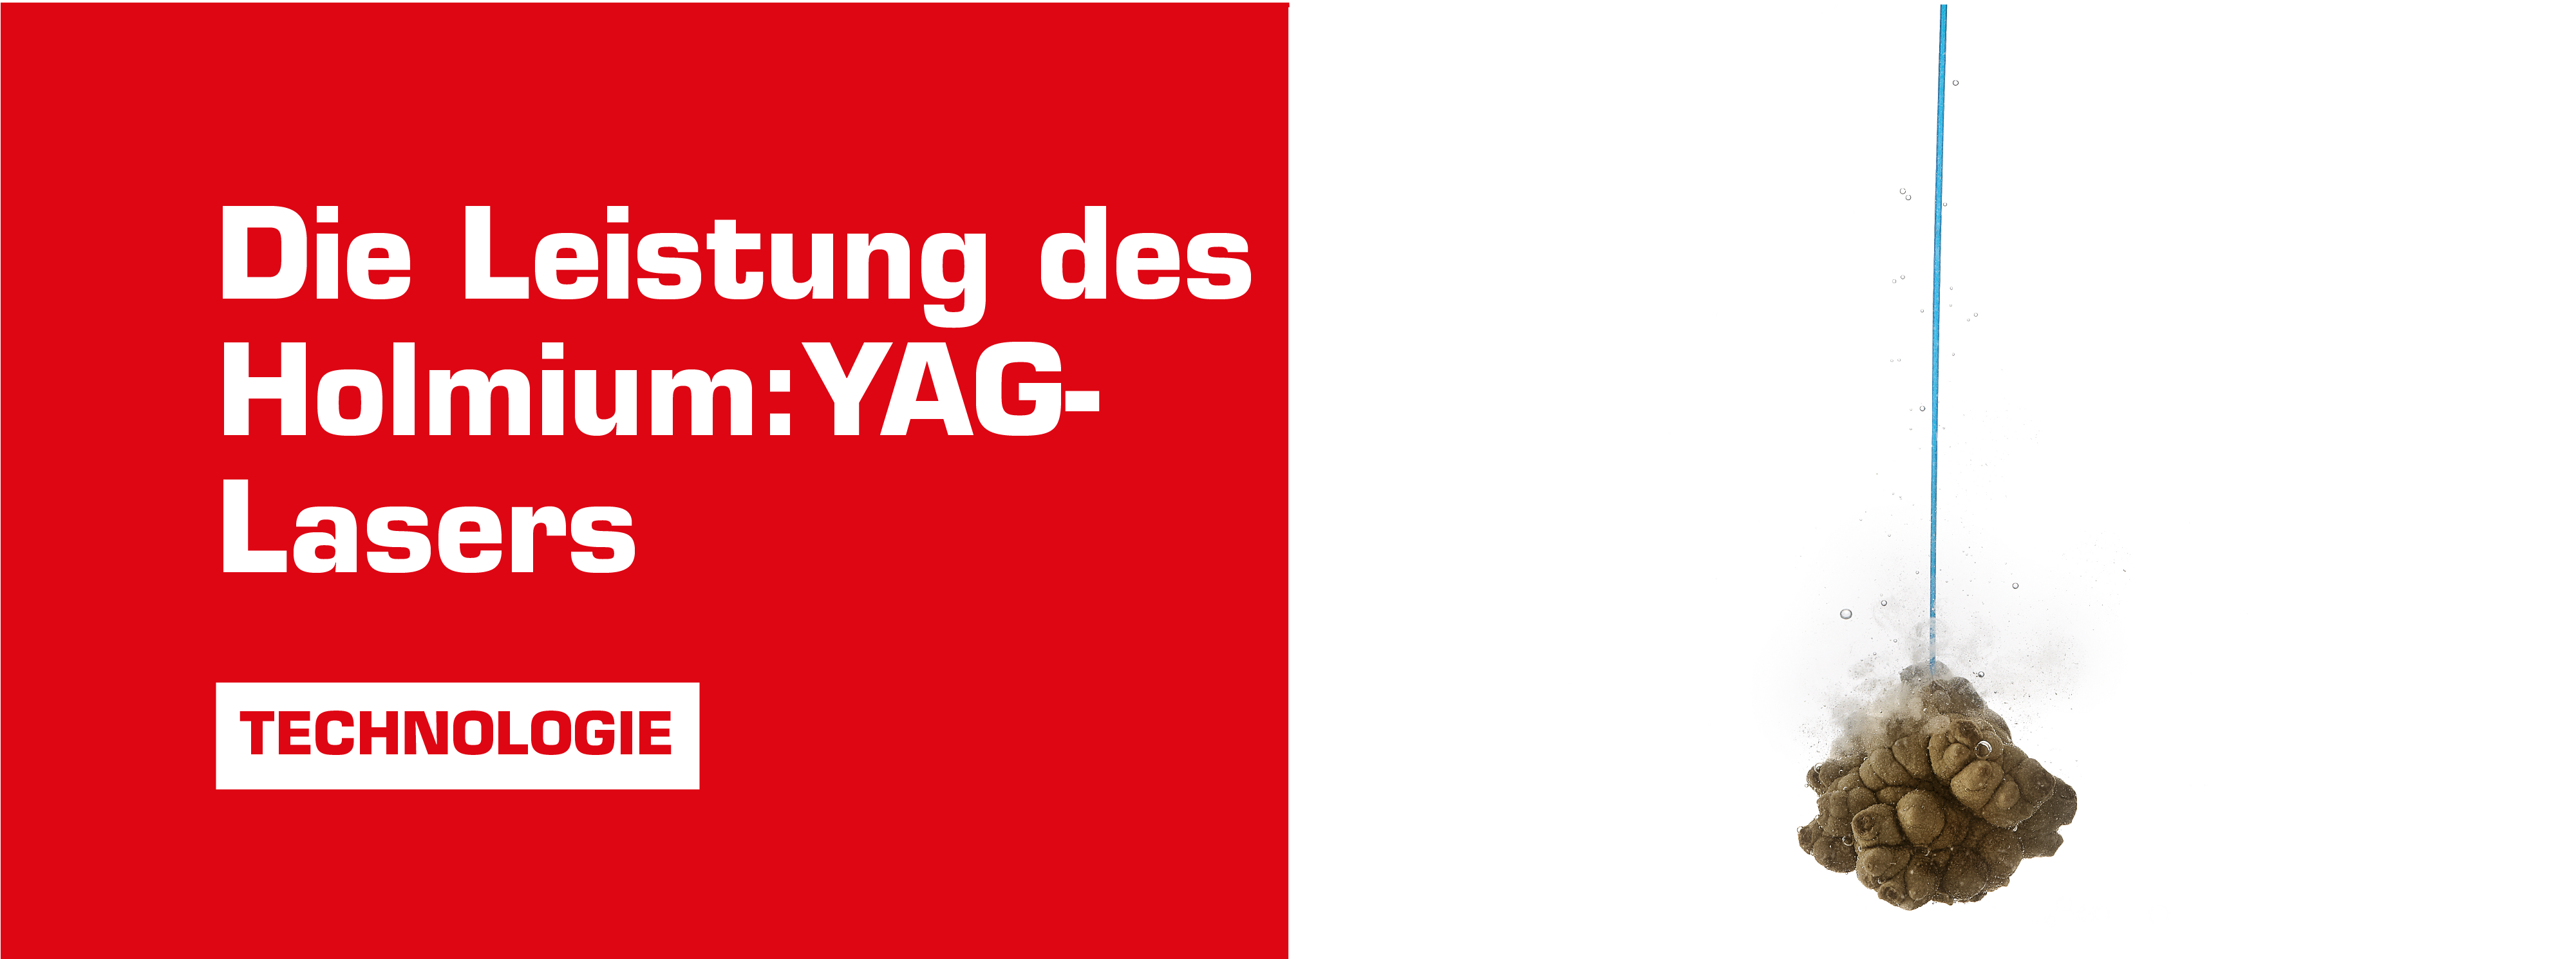 ho:yag